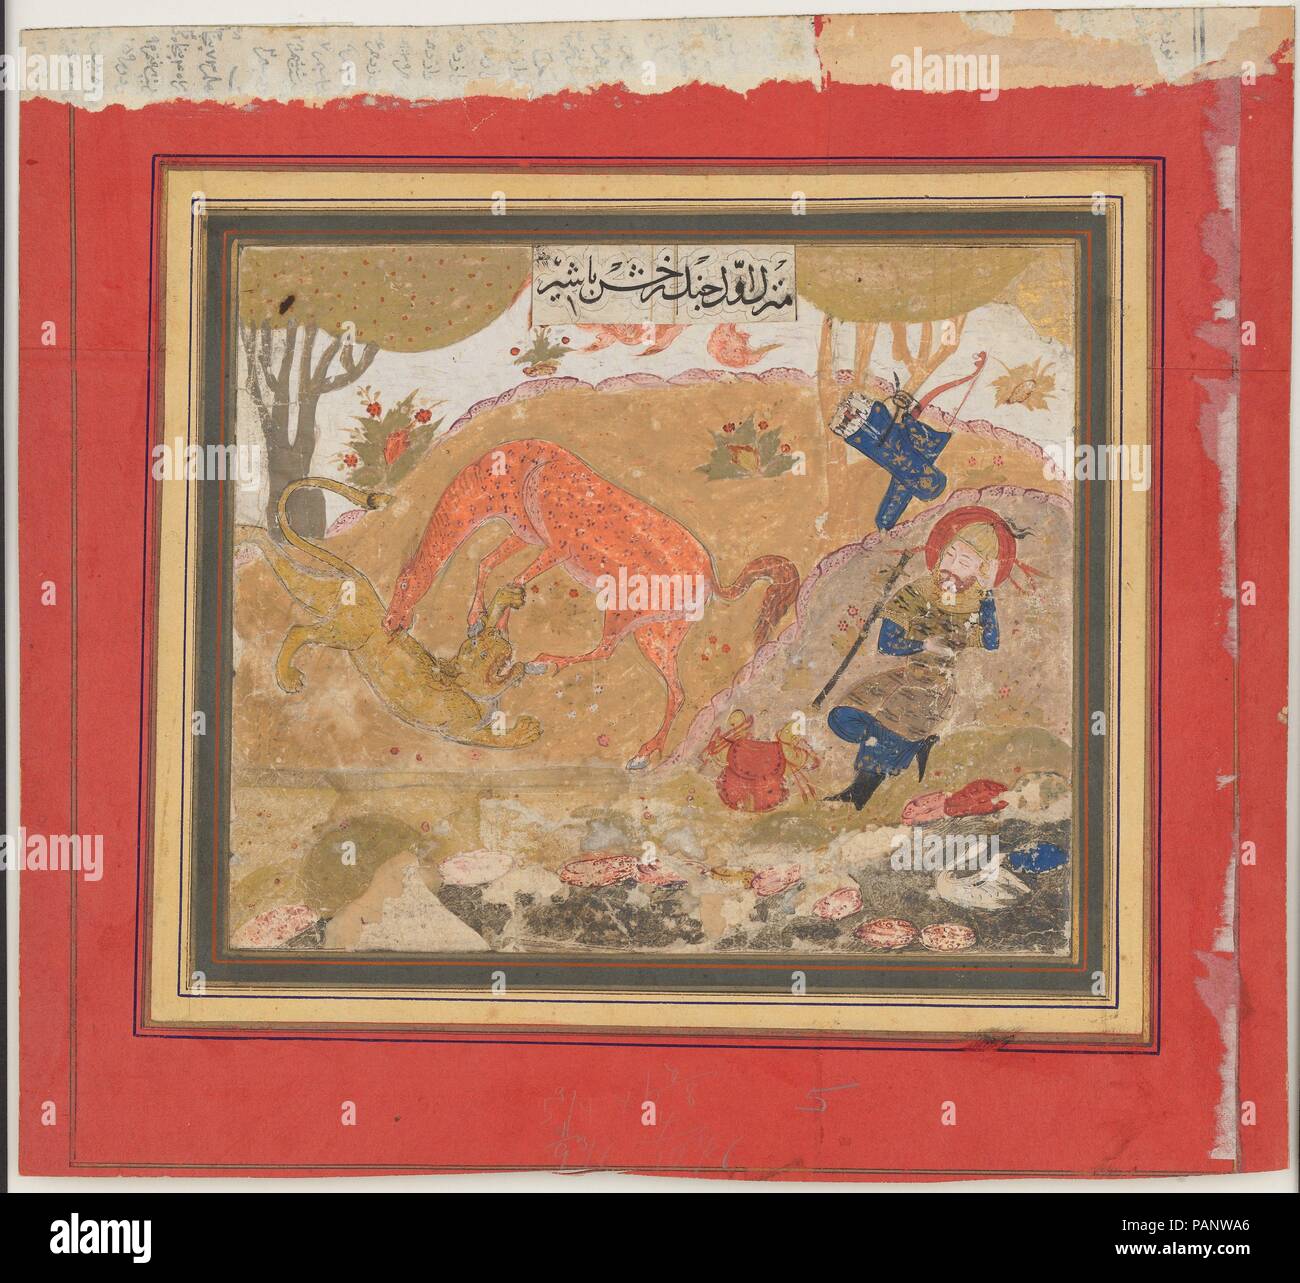 Le premier cours "Rustam : Rakhsh tue un Lion', folio d'un Shahnama (Livre des Rois). Auteur : Abu'l Qasim Firdausi (935-1020). Dimensions : Image : H. 9 1/2 in. (24,1 cm) W. de 10 3/8 in. (26,4 cm) Page : H. 11 1/2 in. (29,2 cm) 12 W. 1/4 in. (31,1 cm) TMC : H. 19 1/4 in. (48,9 cm) 14 1/4 in. W. (36,2 cm). Date : ca. 1430-40. Musée : Metropolitan Museum of Art, New York, USA. Banque D'Images